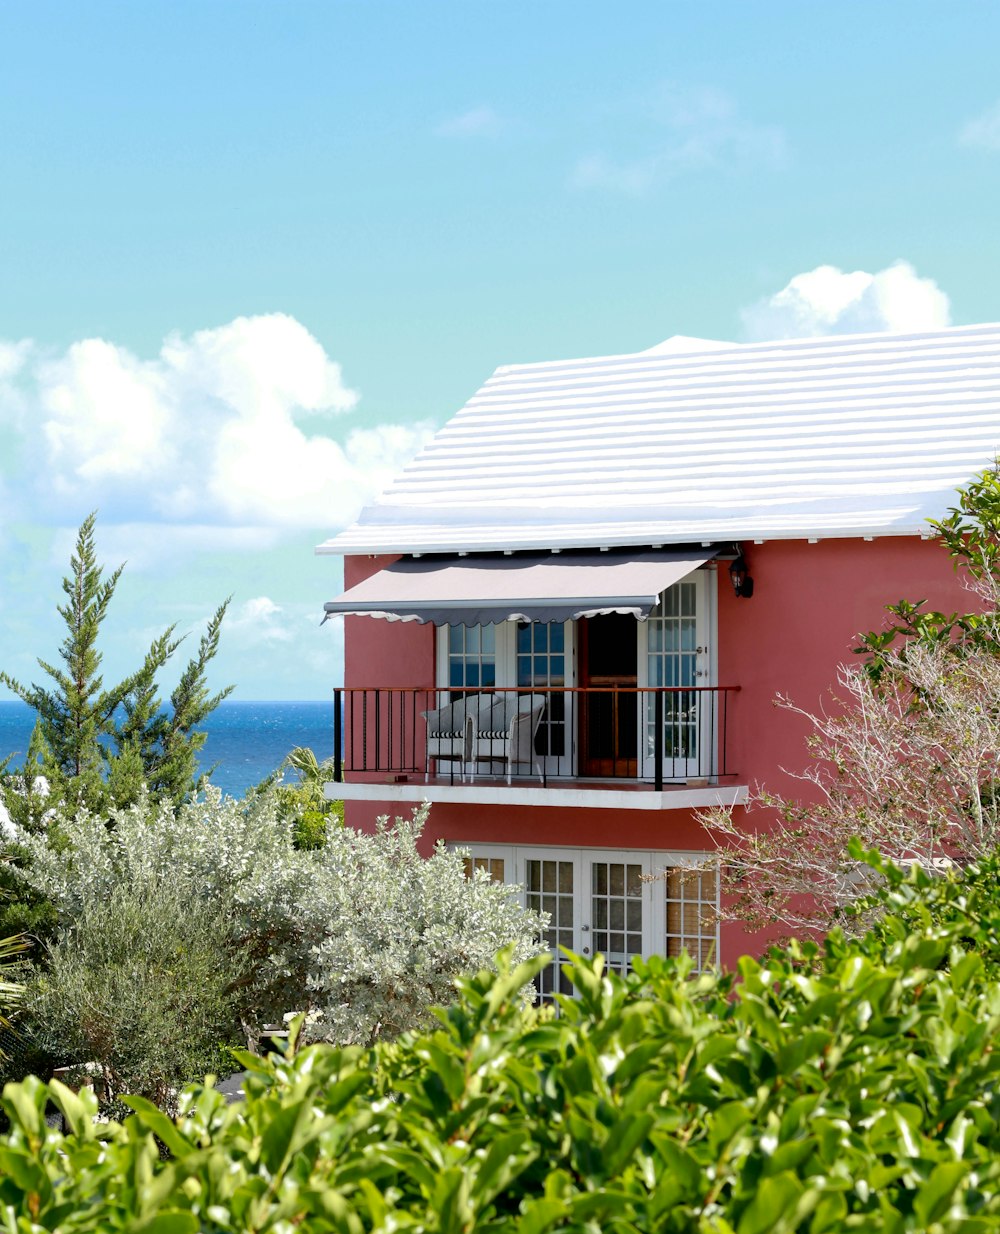 Una casa rossa con il tetto bianco e un balcone